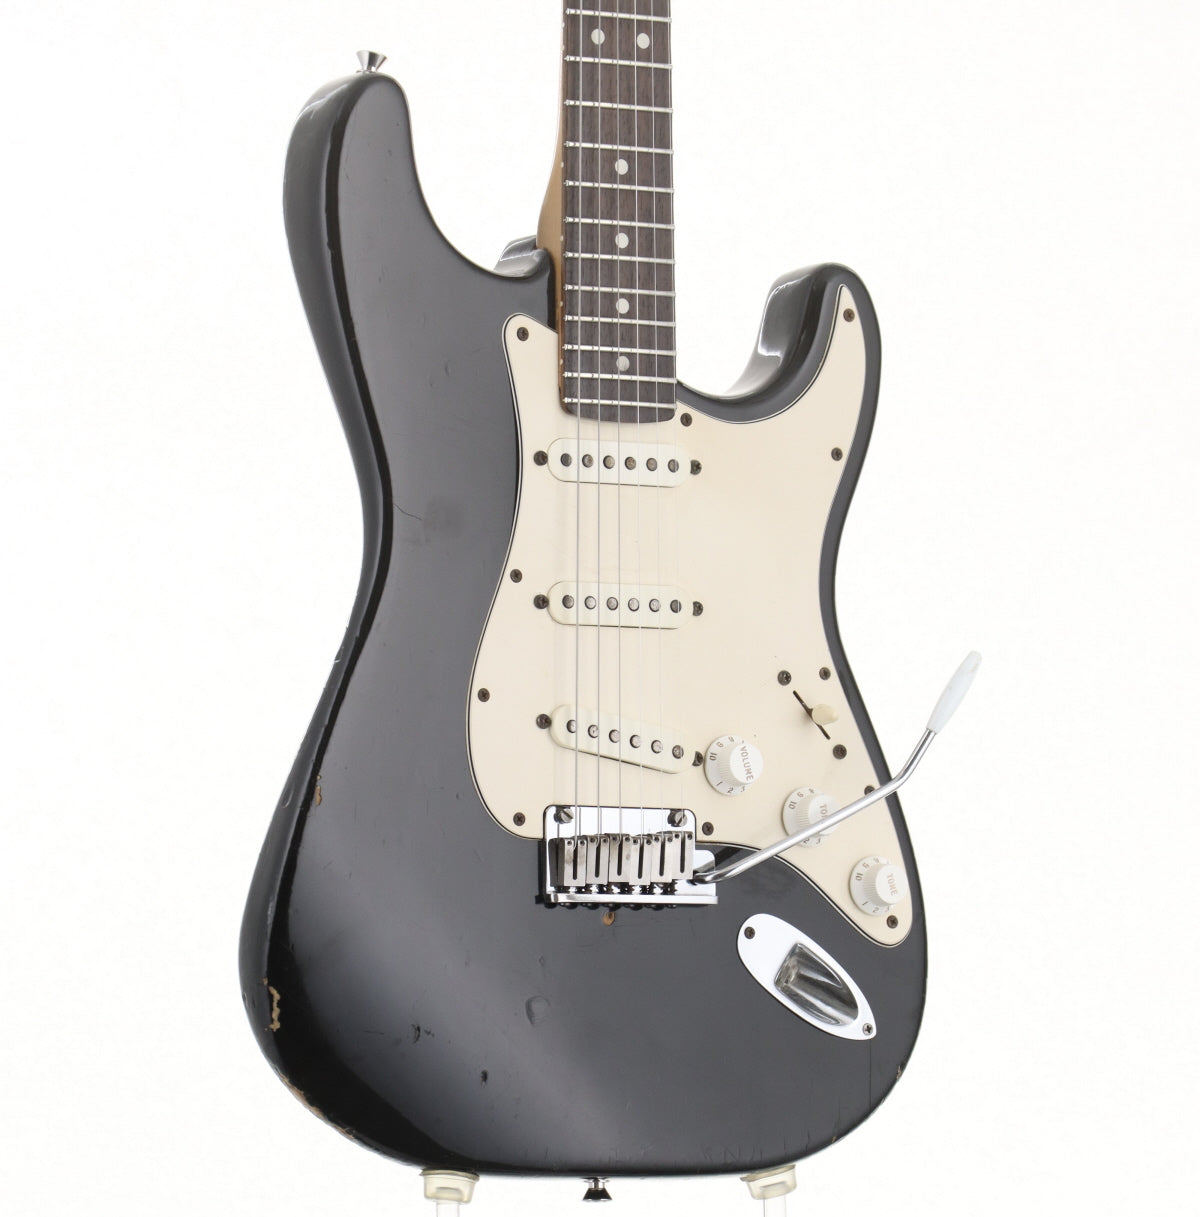 [SN N1030945] USED Fender / American Standard Stratocaster Black Rosewood Fingerboard 1991 [09]